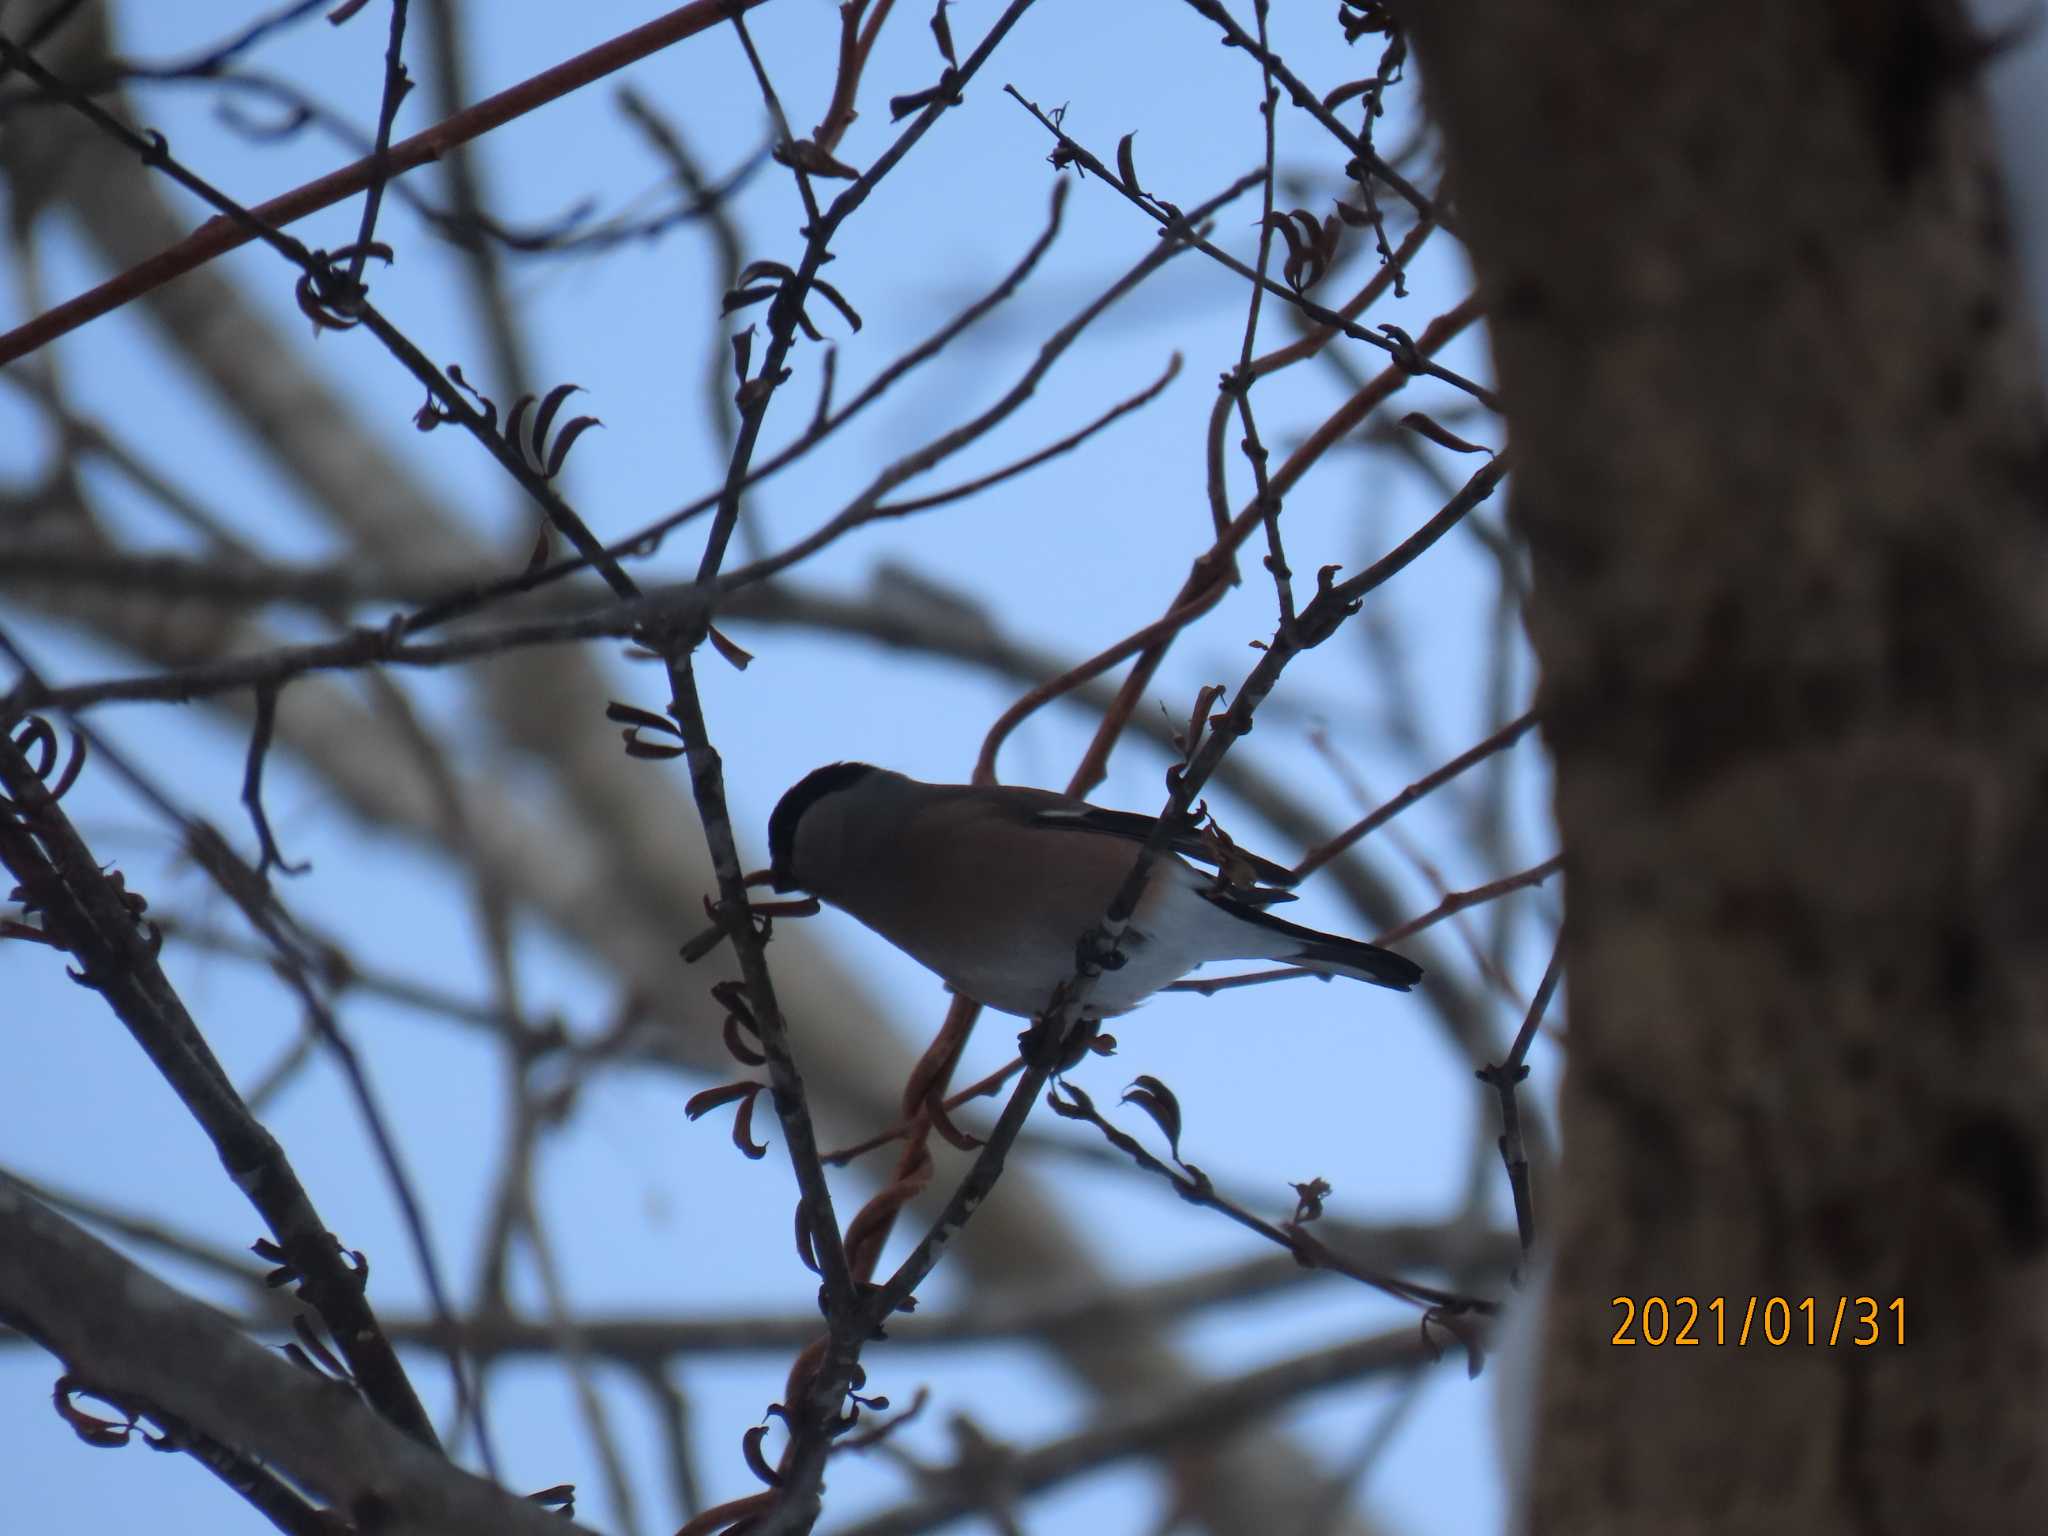 21年01月31日 日 野幌森林公園の野鳥観察記録 By Hiron バードウォッチングならzoopicker